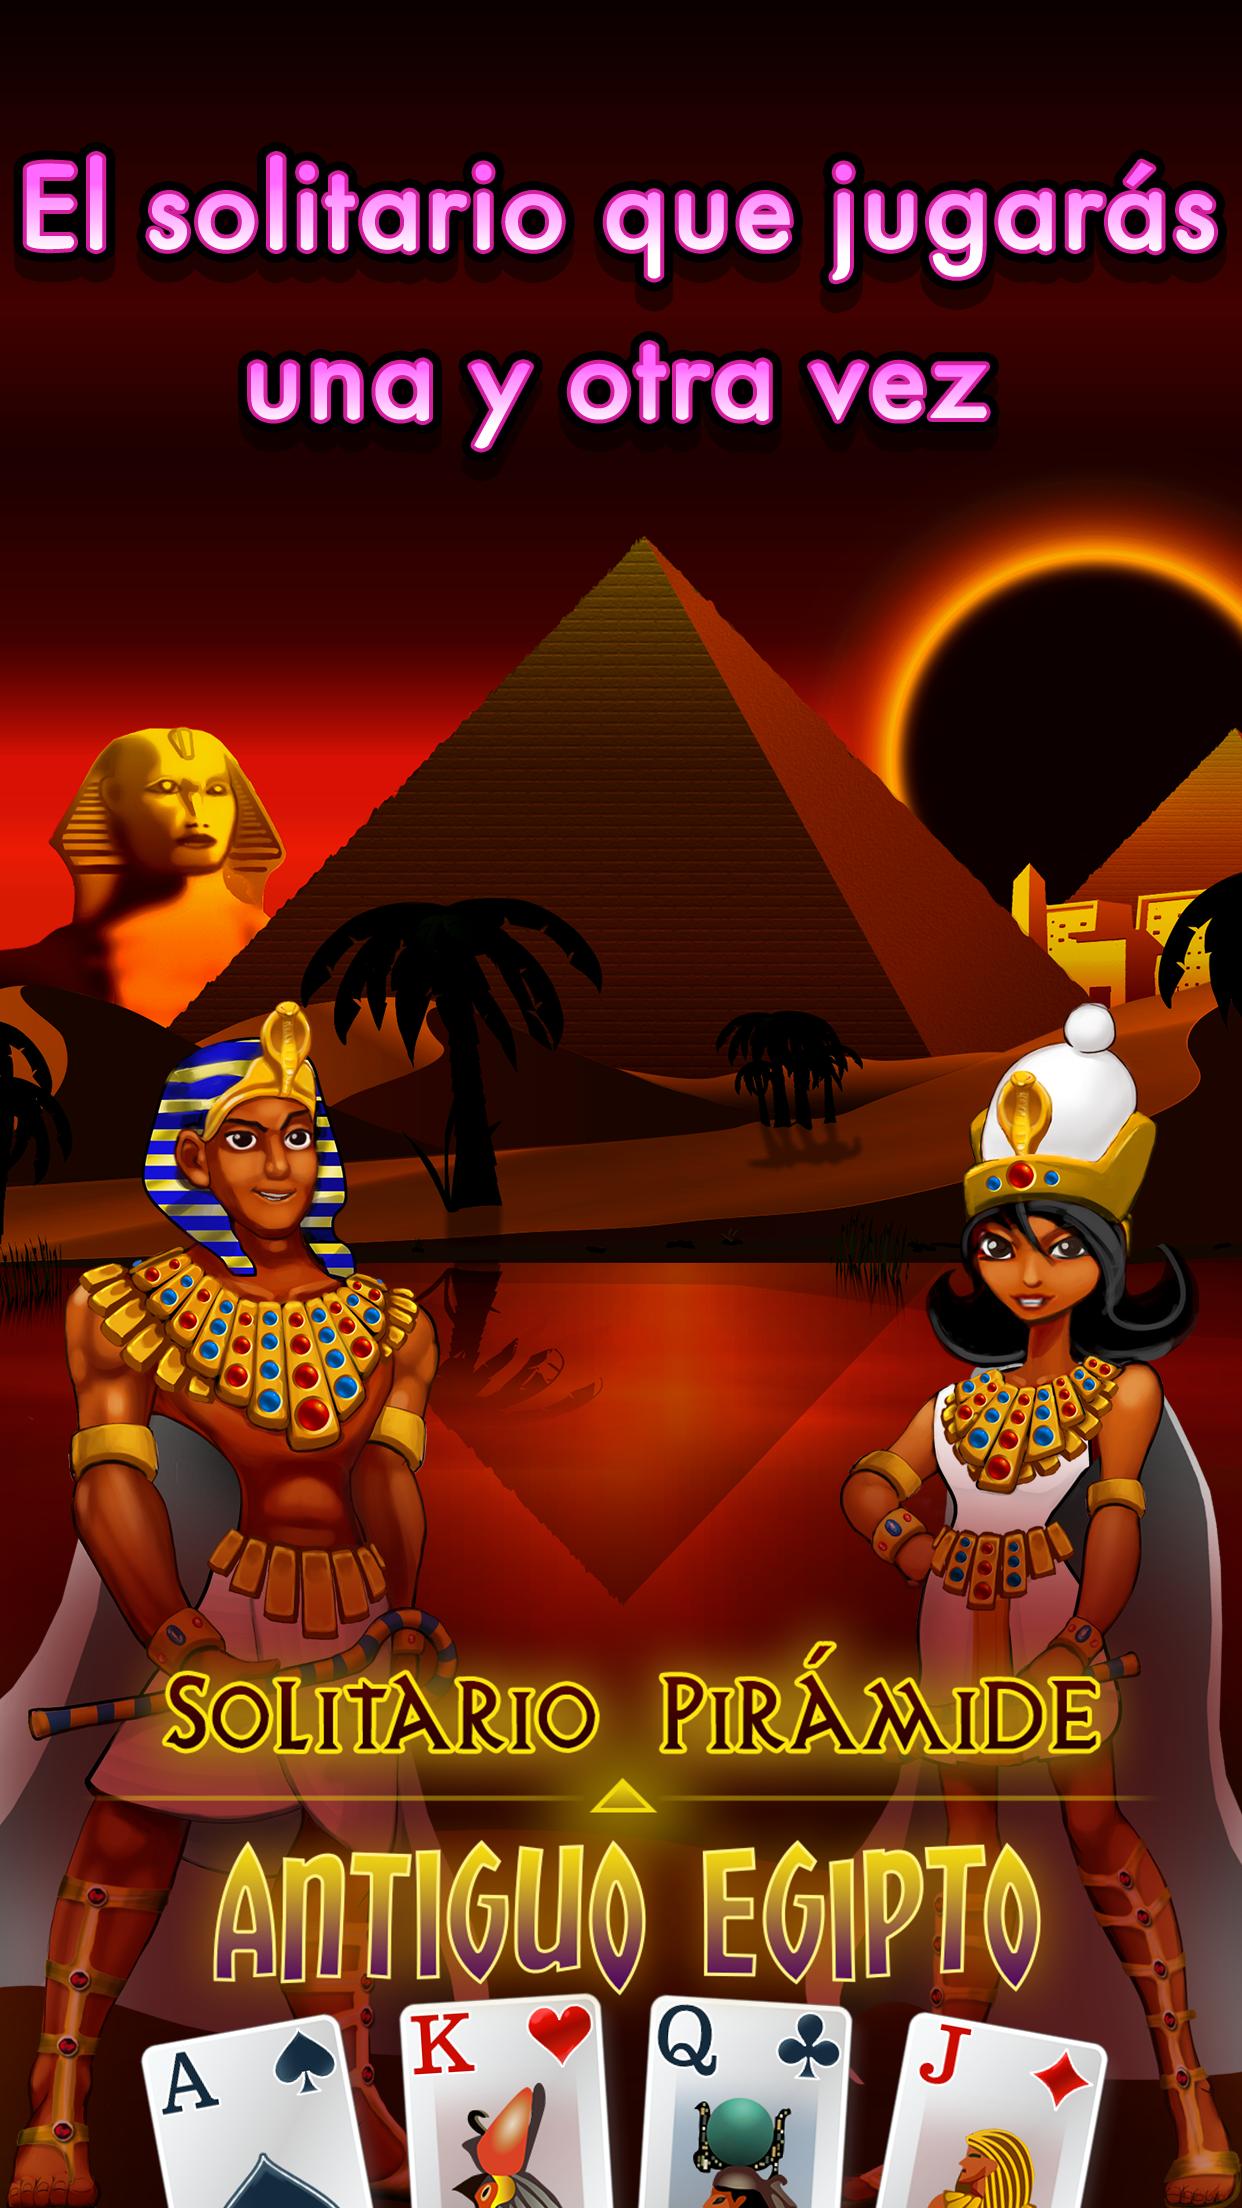 Solitario Pirámide Antiguo Egipto for Android - APK Download